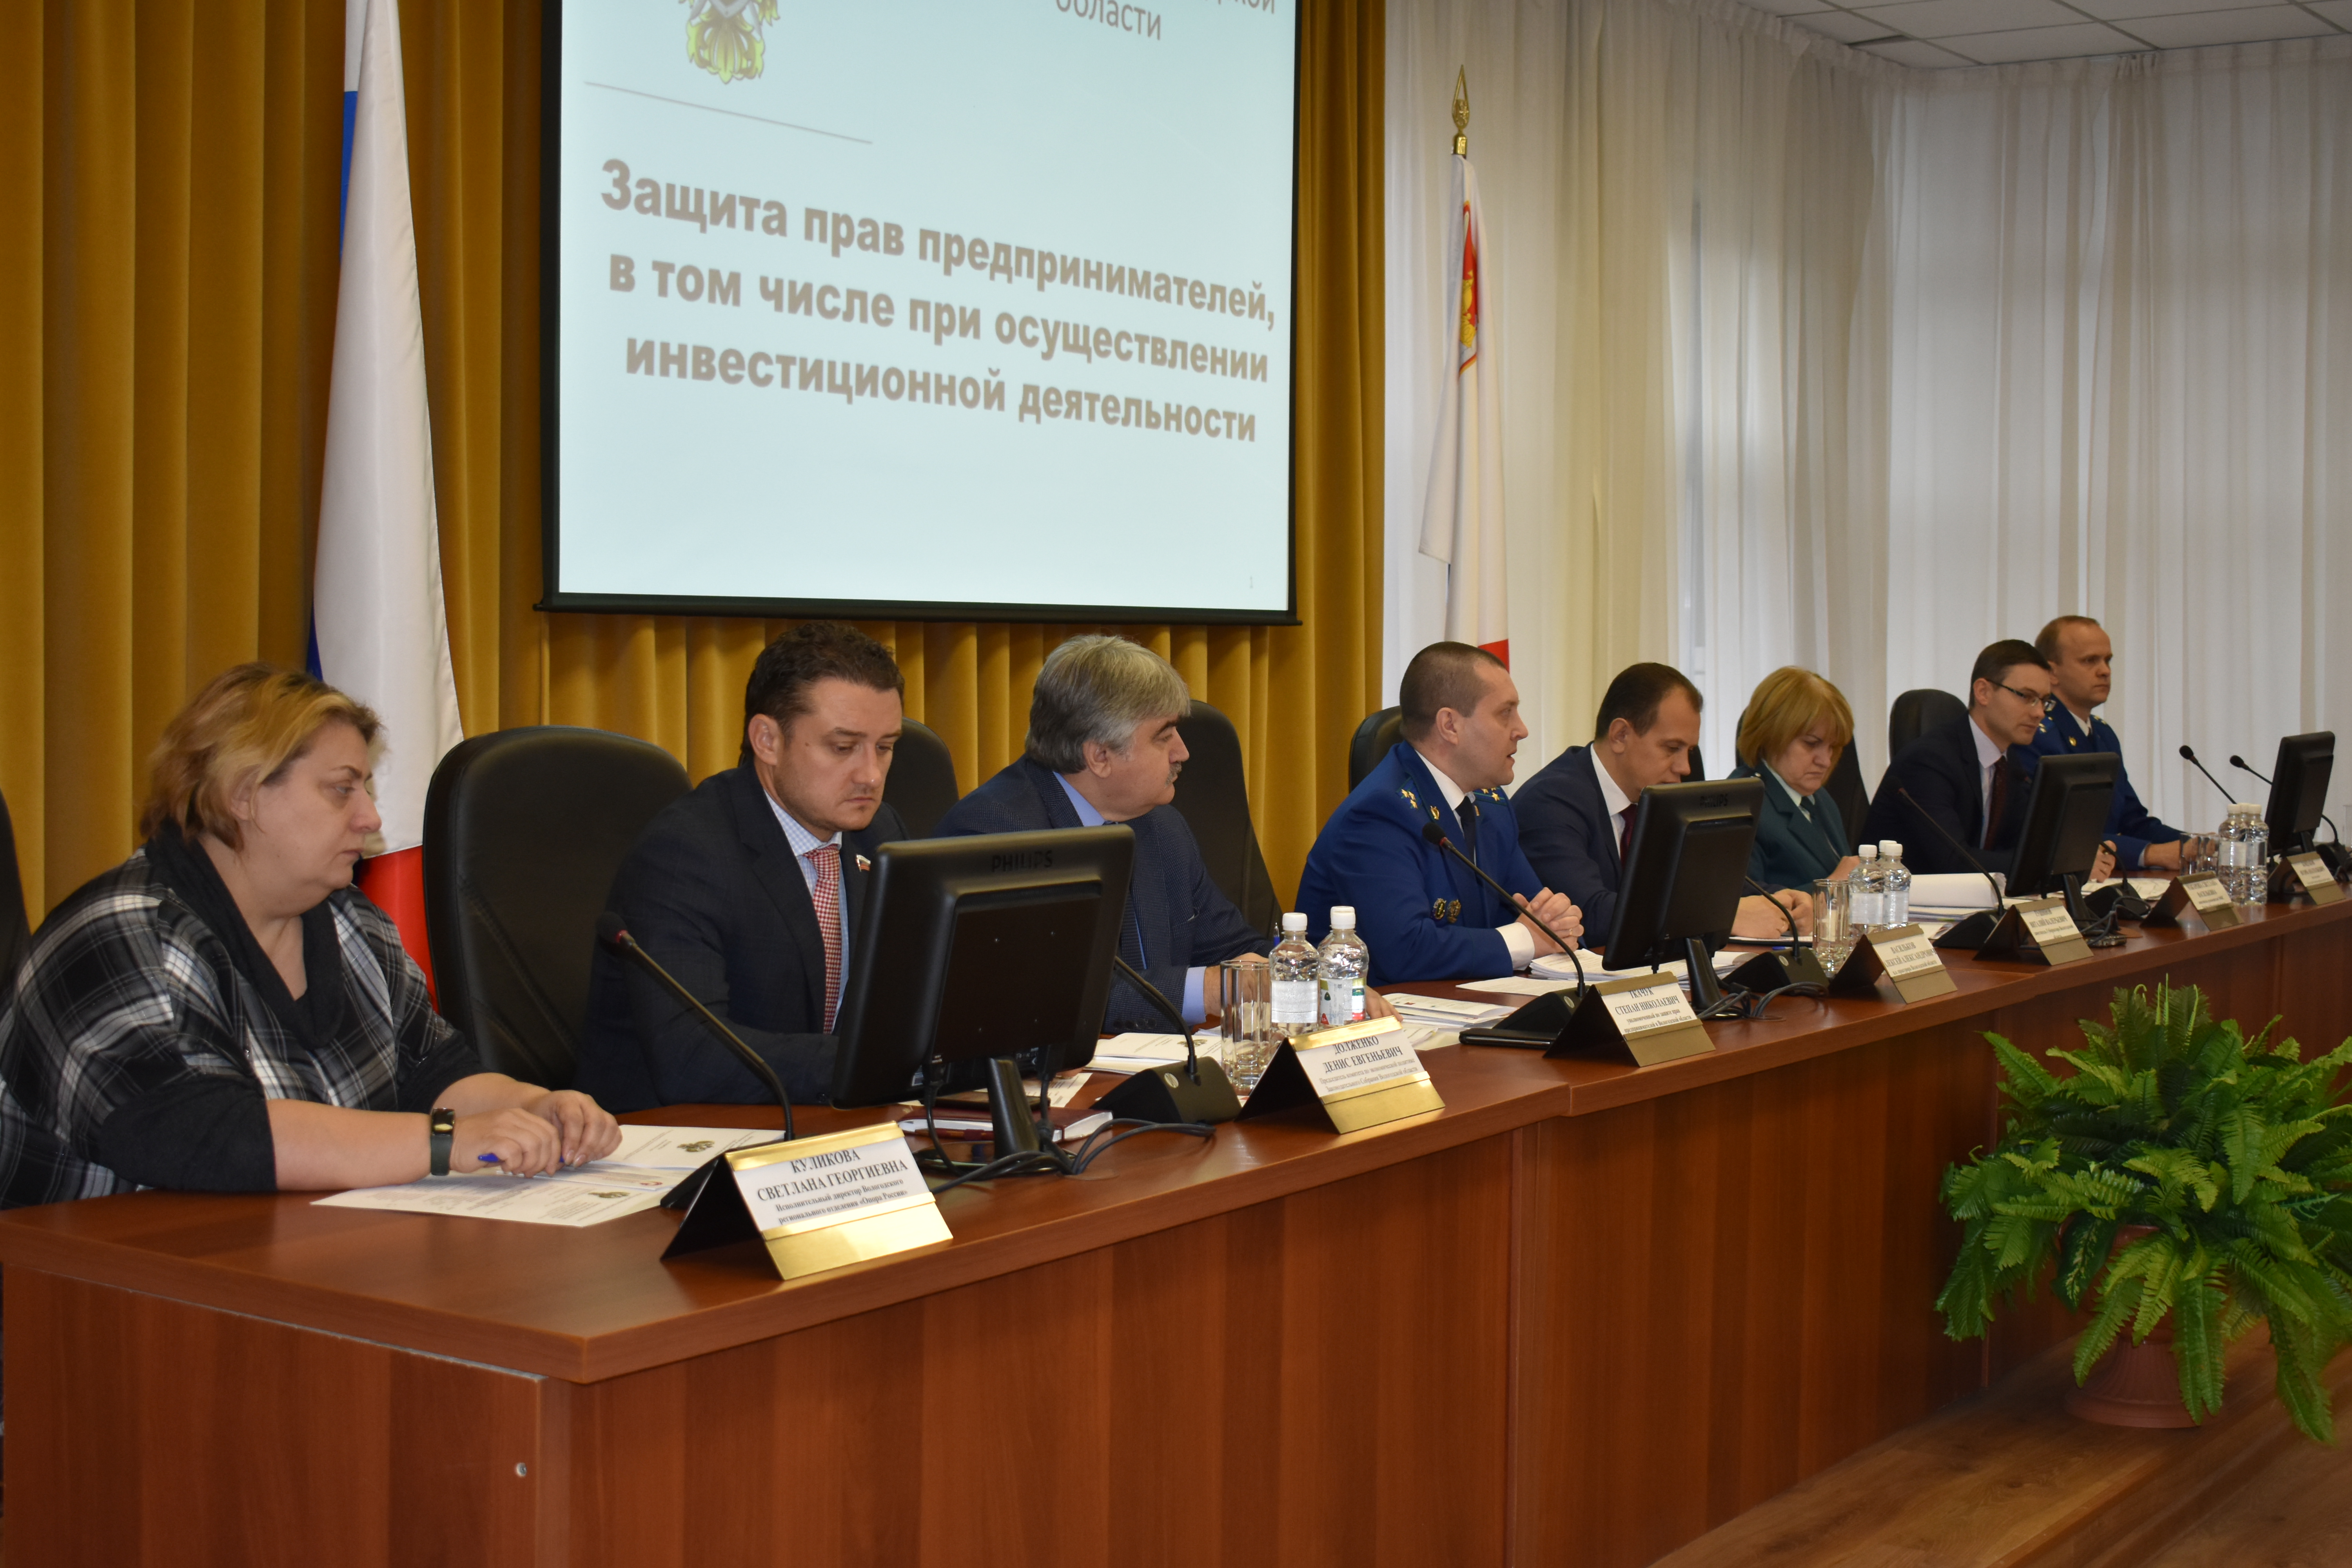 Состоялся III открытый форум Прокуратуры Вологодской области по вопросам защиты прав предпринимателей